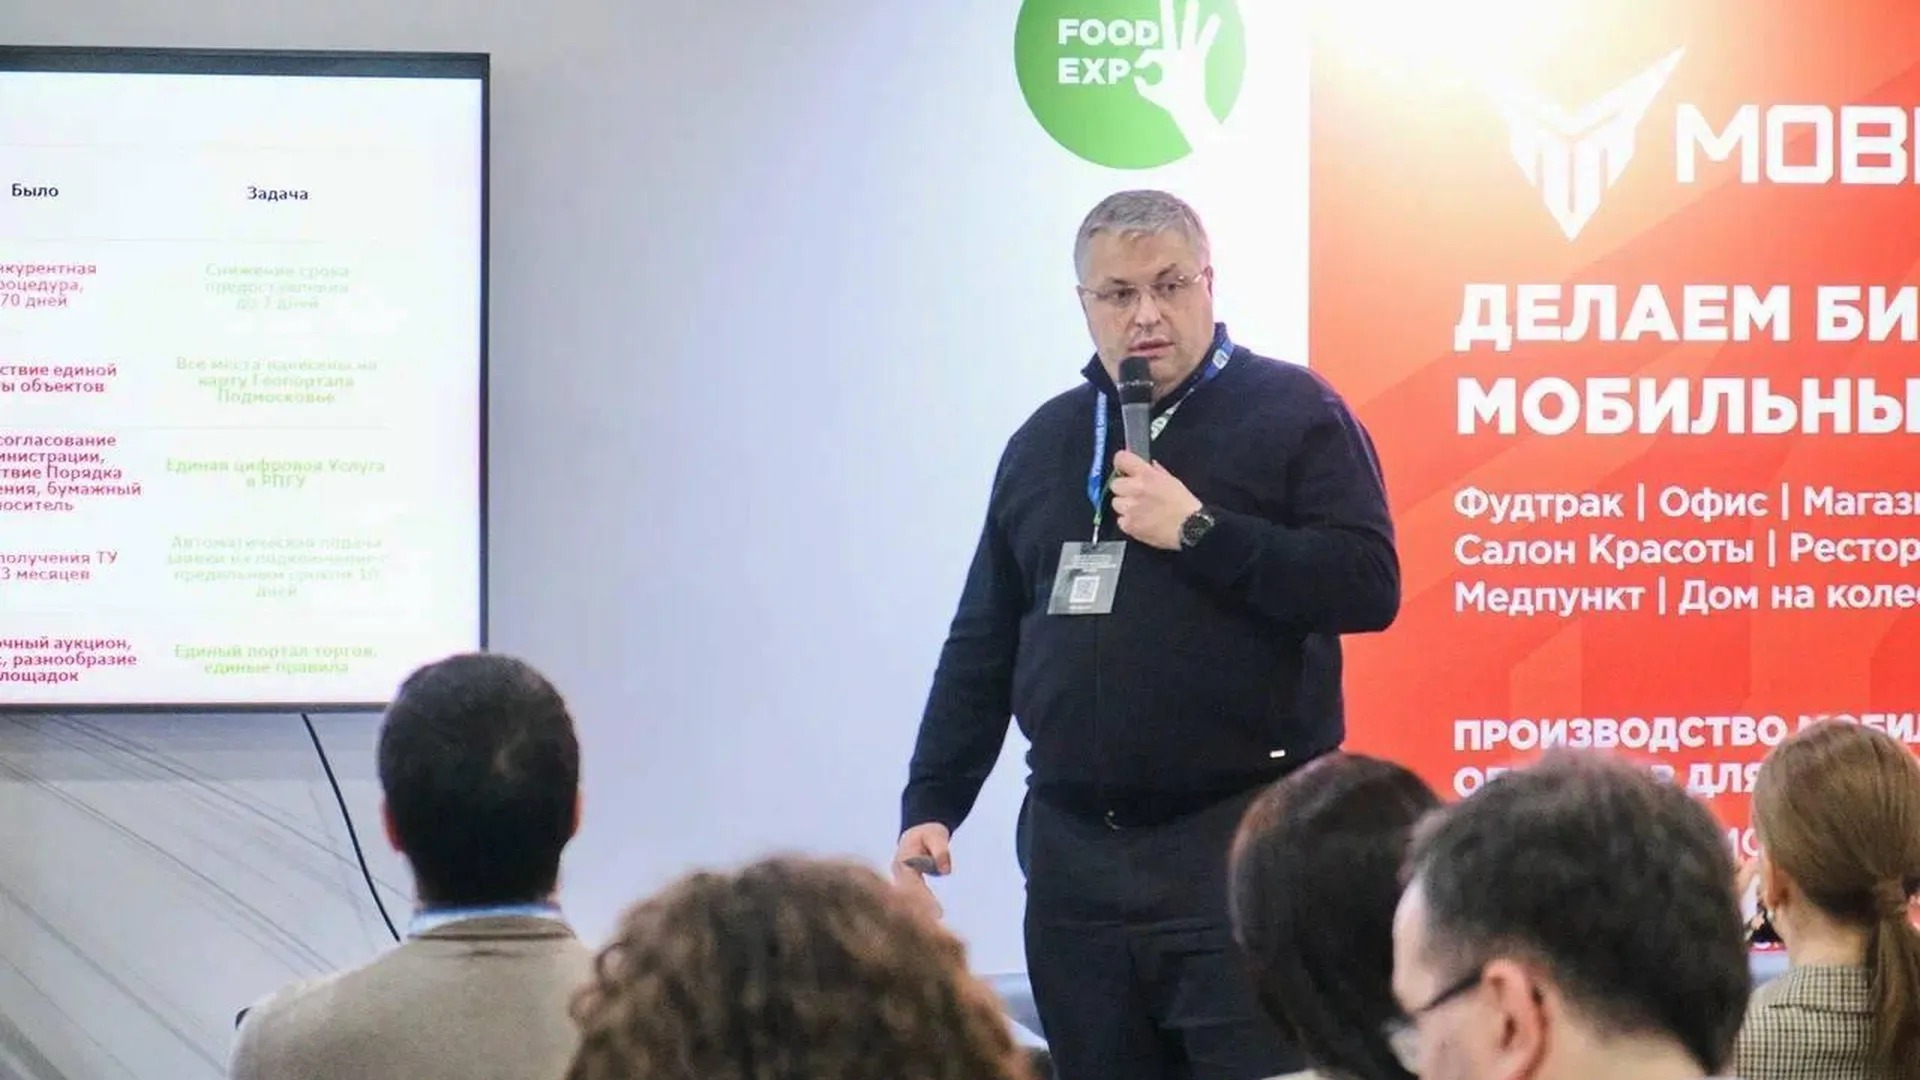 Развитие мобильного бизнеса обсудили на выставке «Food Expo» в Московской области